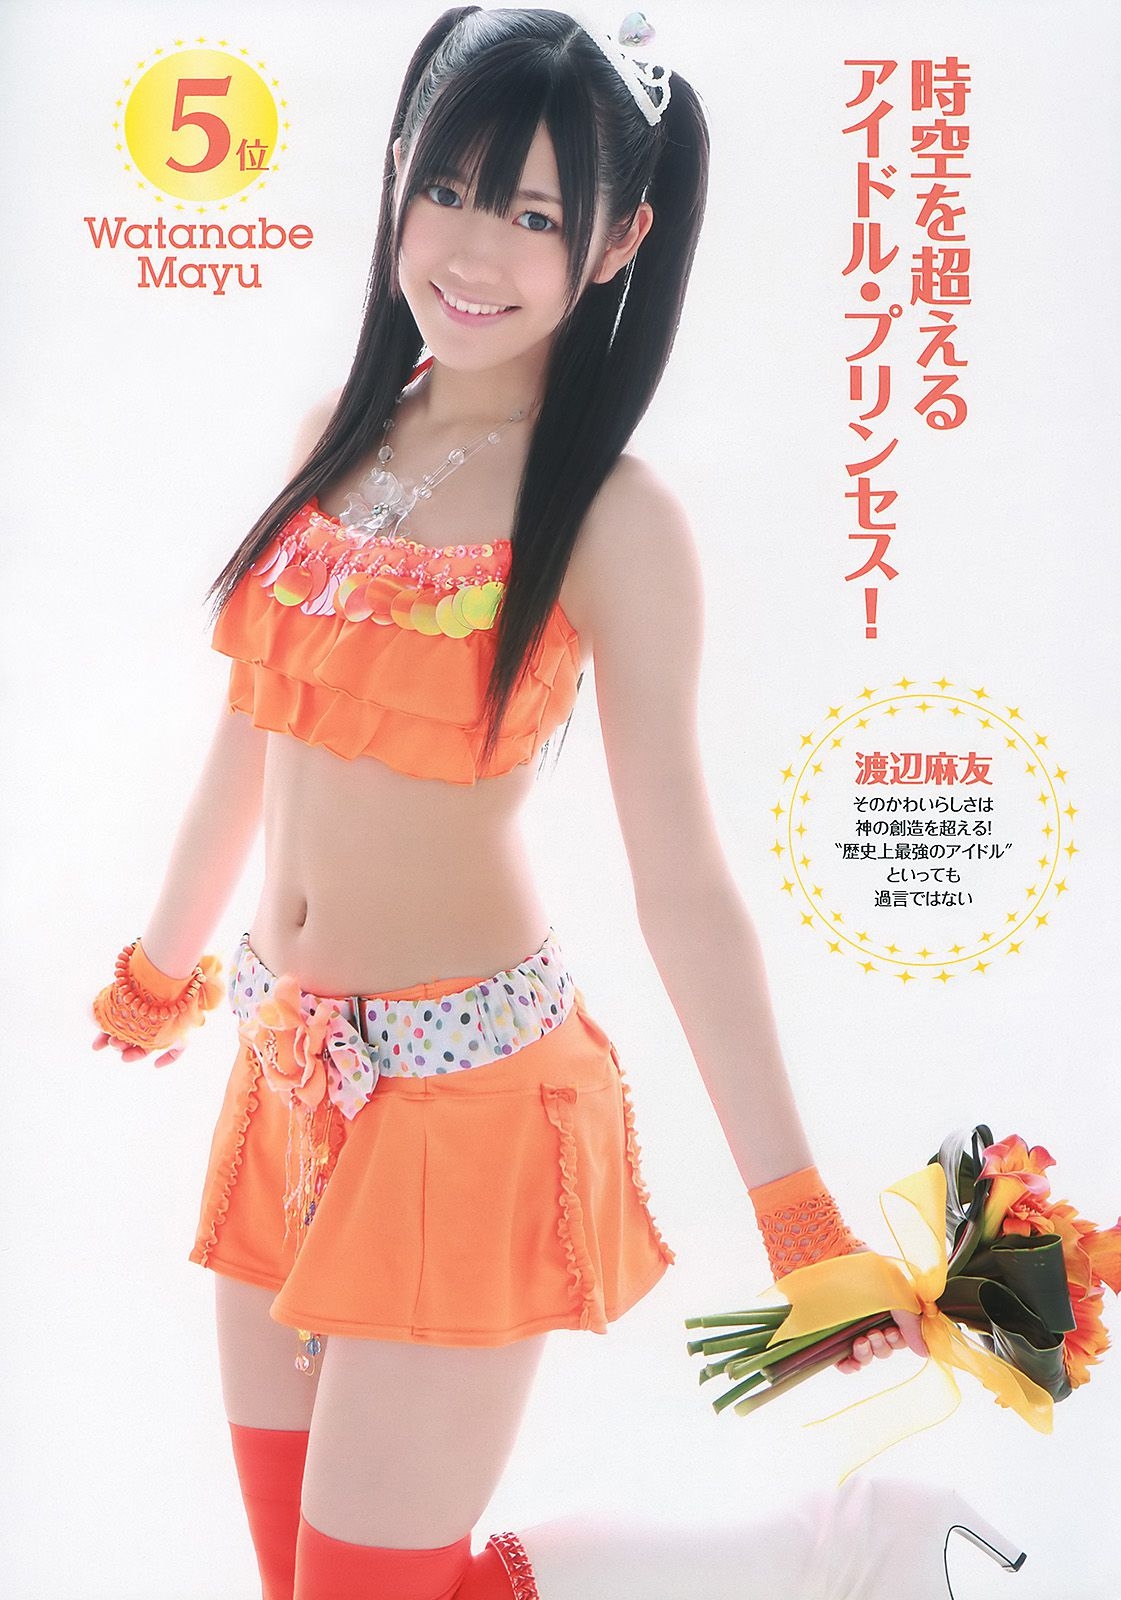 AKB48 次原かな 原幹恵 三原勇希 倉科カナ [Weekly Playboy] 2010年No.39 写真杂志 